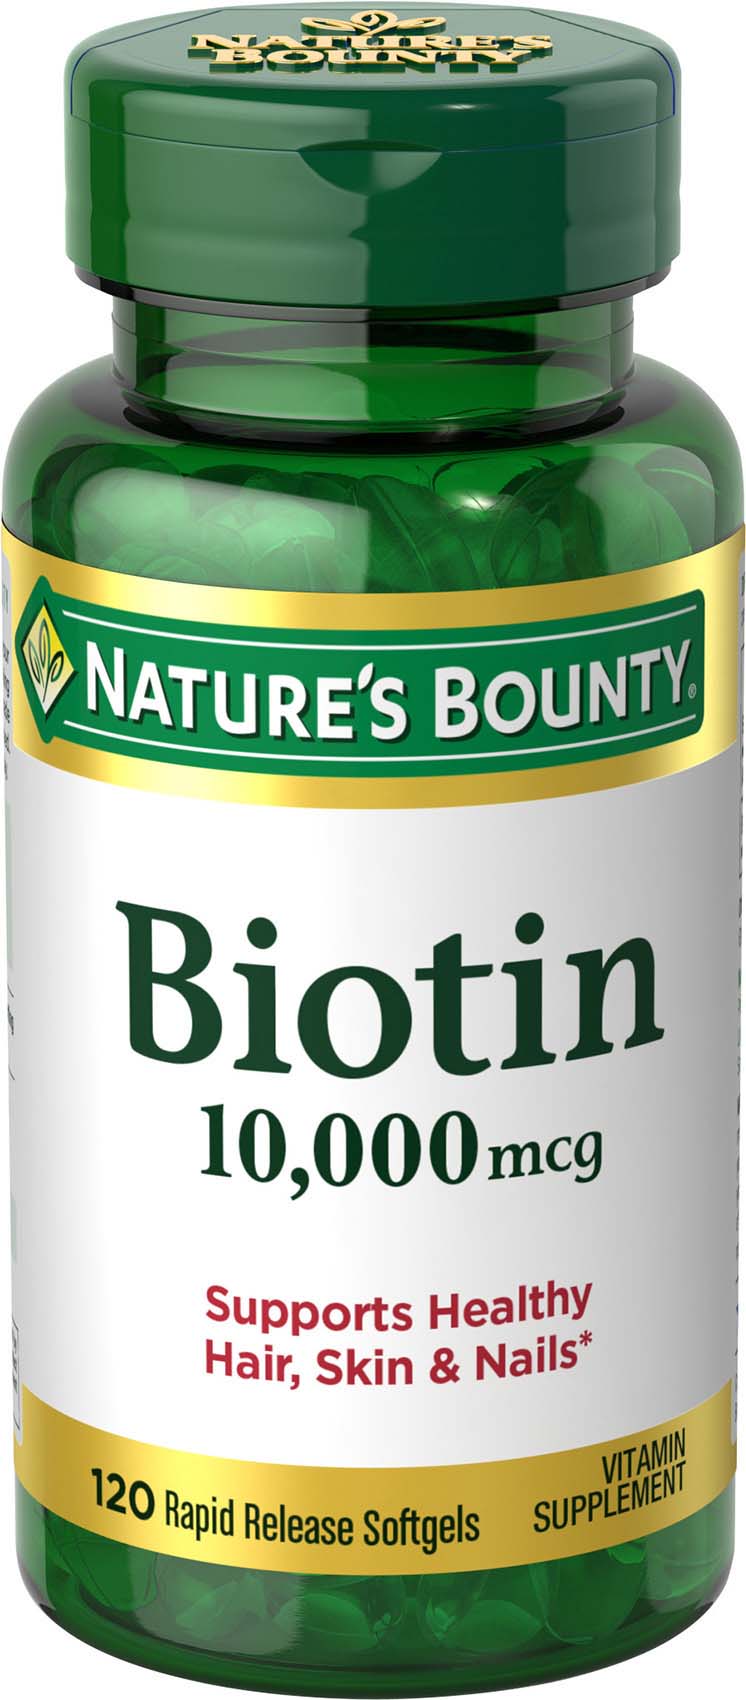 Nature’s Bounty Biotin Supplement, 10000mcg, 120 Rapid Release Softgels - image 1 of 8